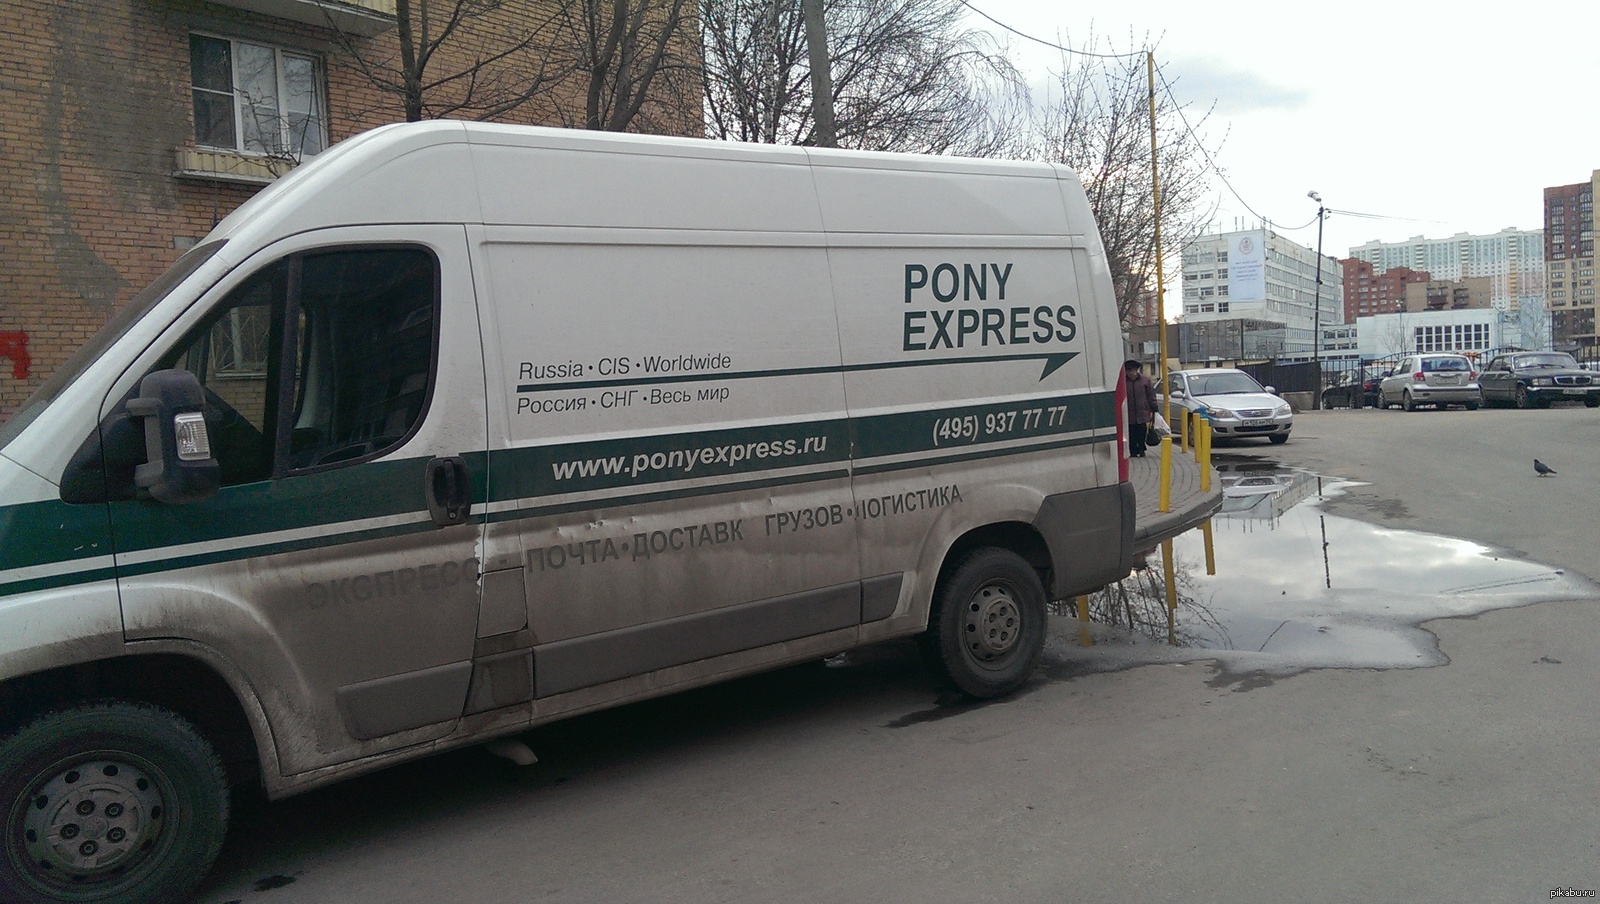 Доставка pony. Пони экспресс. Pony Express машины. Пони экспресс авто. Pony Express логотип.